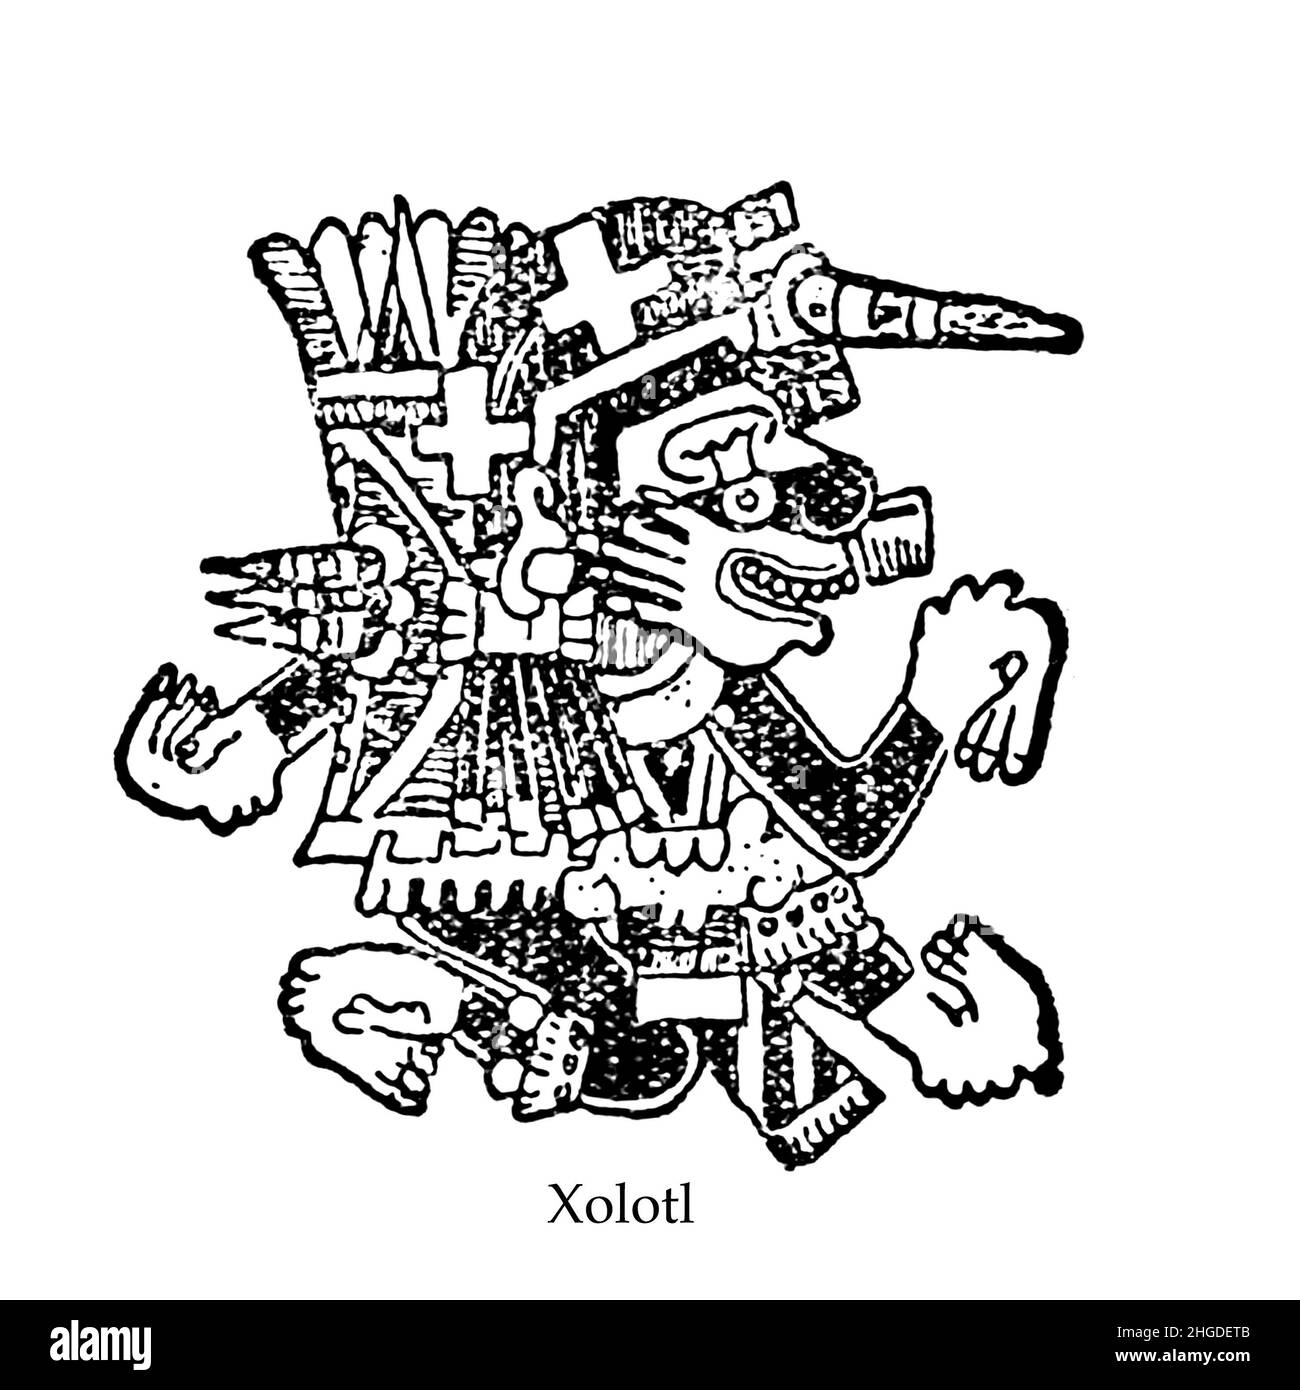 [Nella mitologia azteca, Xolotl (pronuncia Nahuatl: [ˈʃolot͡ɬ] (su questo soundlisten)) era un dio di fuoco e fulmine. Era comunemente raffigurato come un uomo a testa di cane ed era un'anima-guida per i morti]. Dal libro ' Miti e leggende Messico e Perù ' di Lewis Spence, editore Boston : David D. Nickerson 1913 Foto Stock